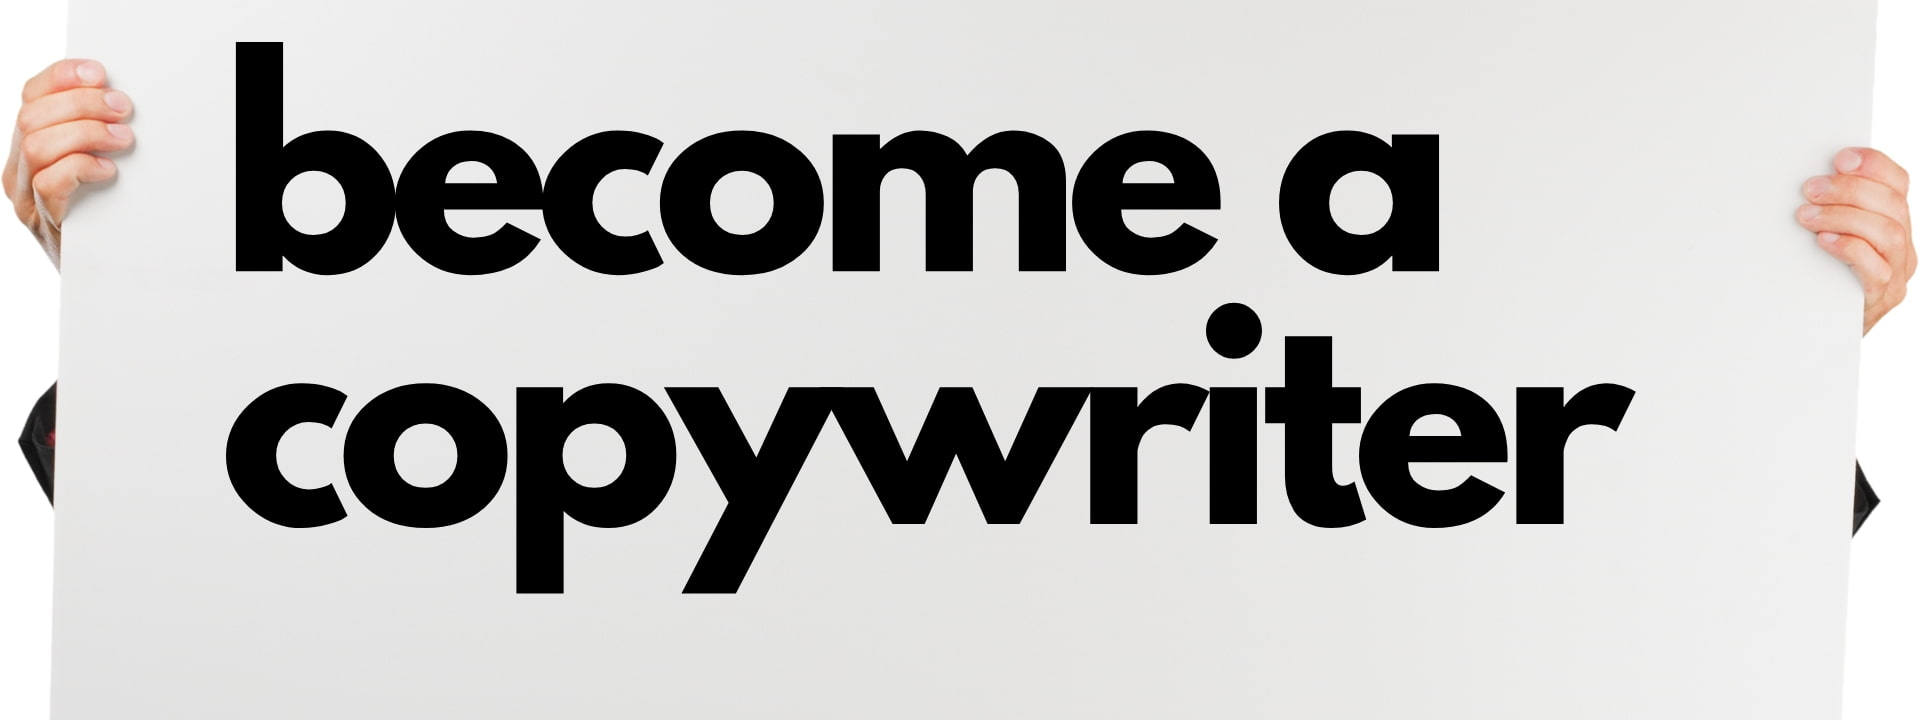 Become a copywriter